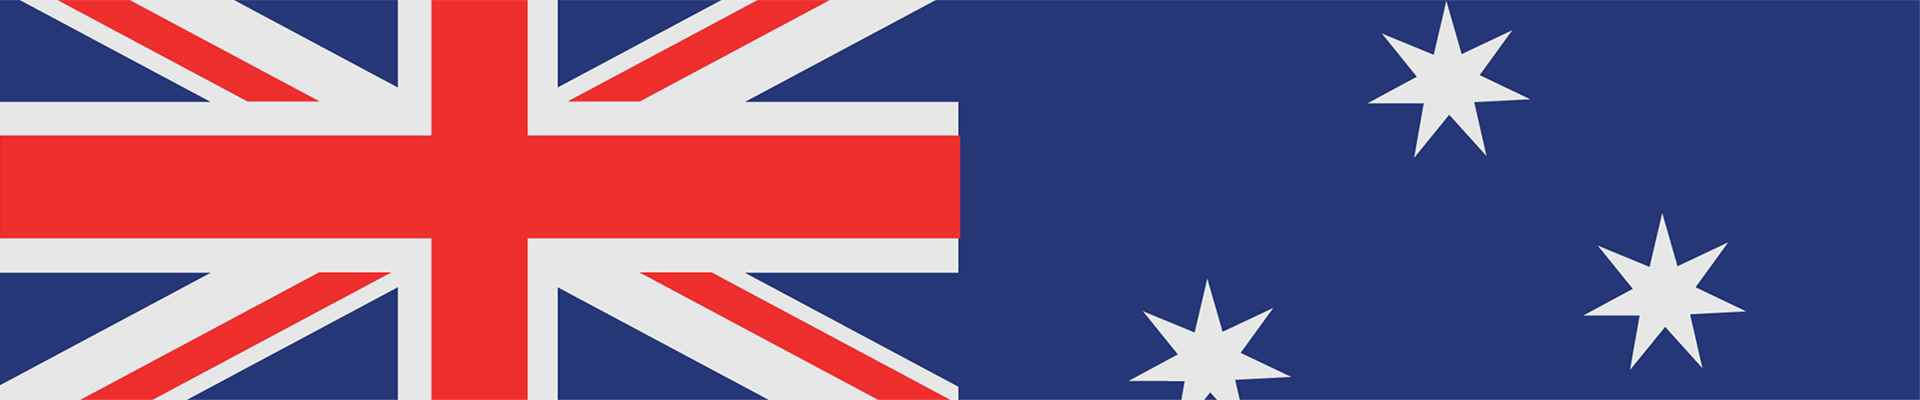 Bemer Hamburg Cyclassics Pro canlı yayın — Avustralya bayrağı